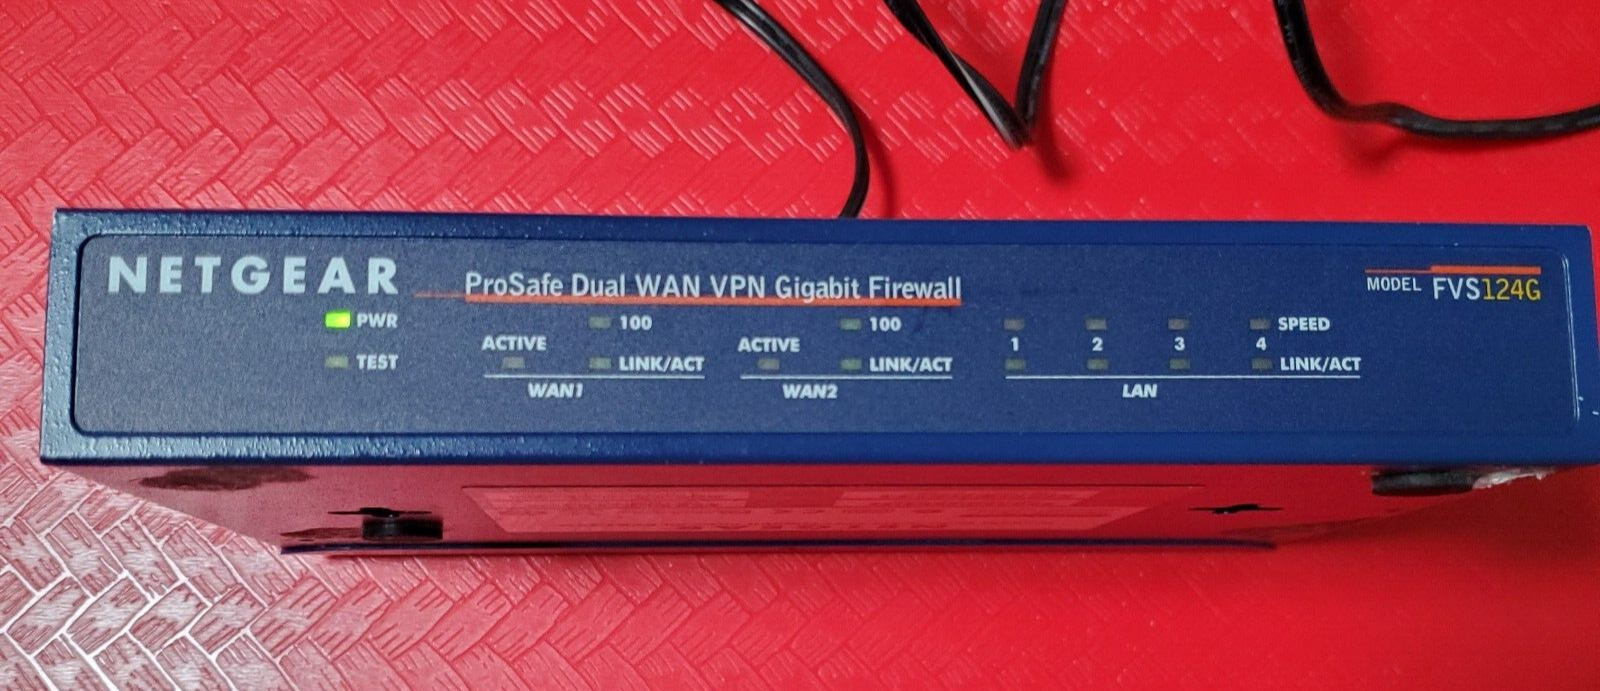 NETGEAR ProSafe Dual WAN VPN Gigabit Firewall Network Router Model FVS124G BLUE